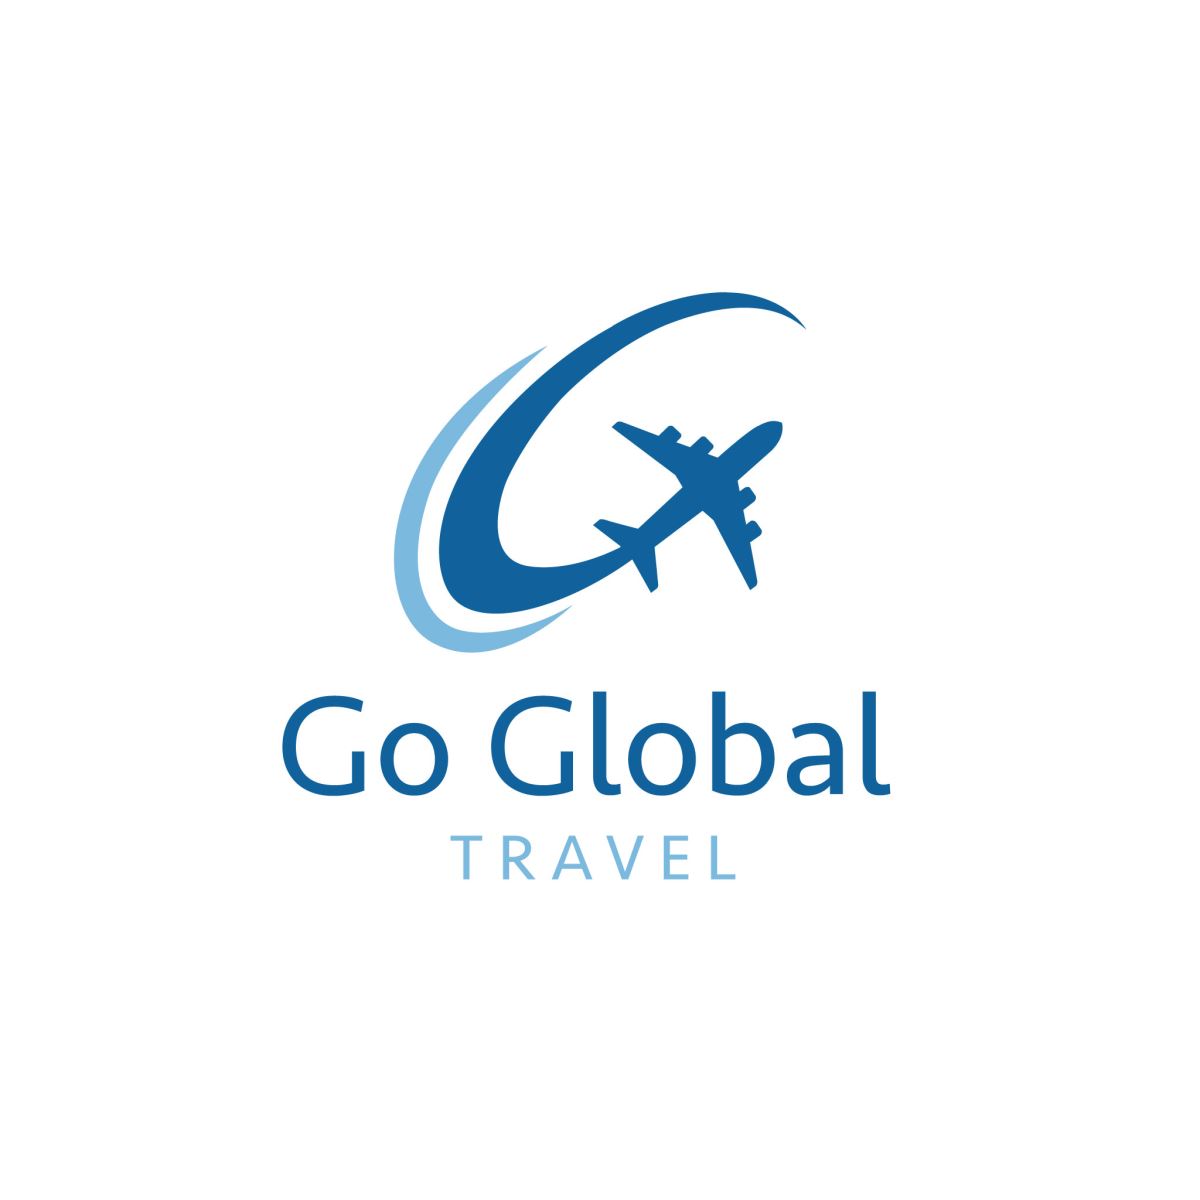 3 lưu ý khi thiết kế logo ngành du lịch – dịch vụ mà bạn không nên bỏ qua